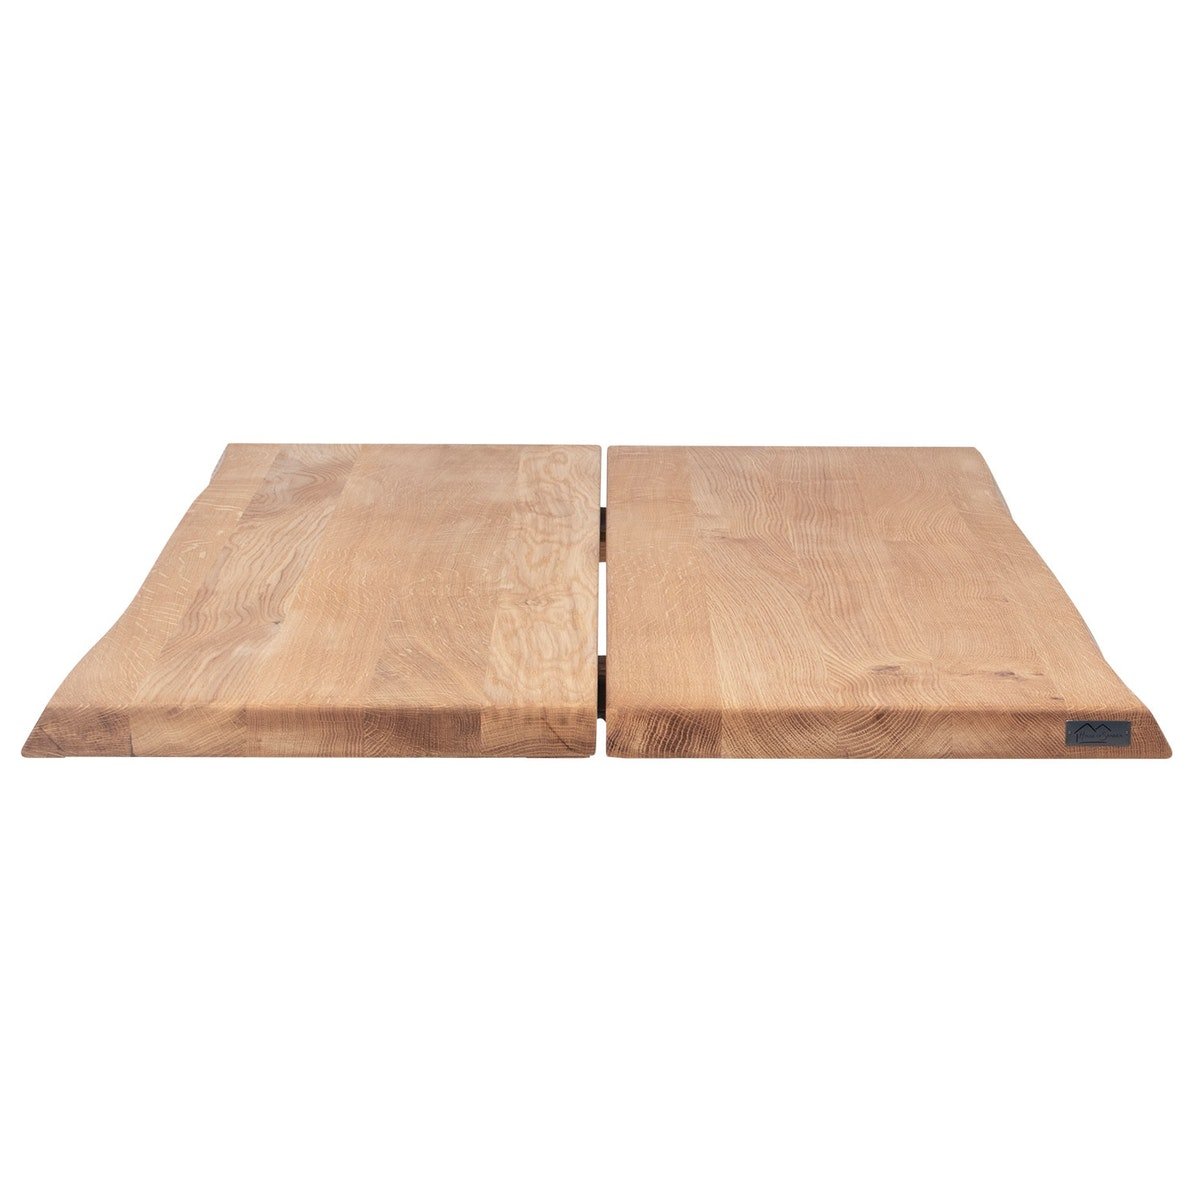 8: Hugin, Bordplade til sofa- eller cafébord, Egetræ by House of Sander (H: 4 cm. B: 80 cm. L: 80 cm., Natur)